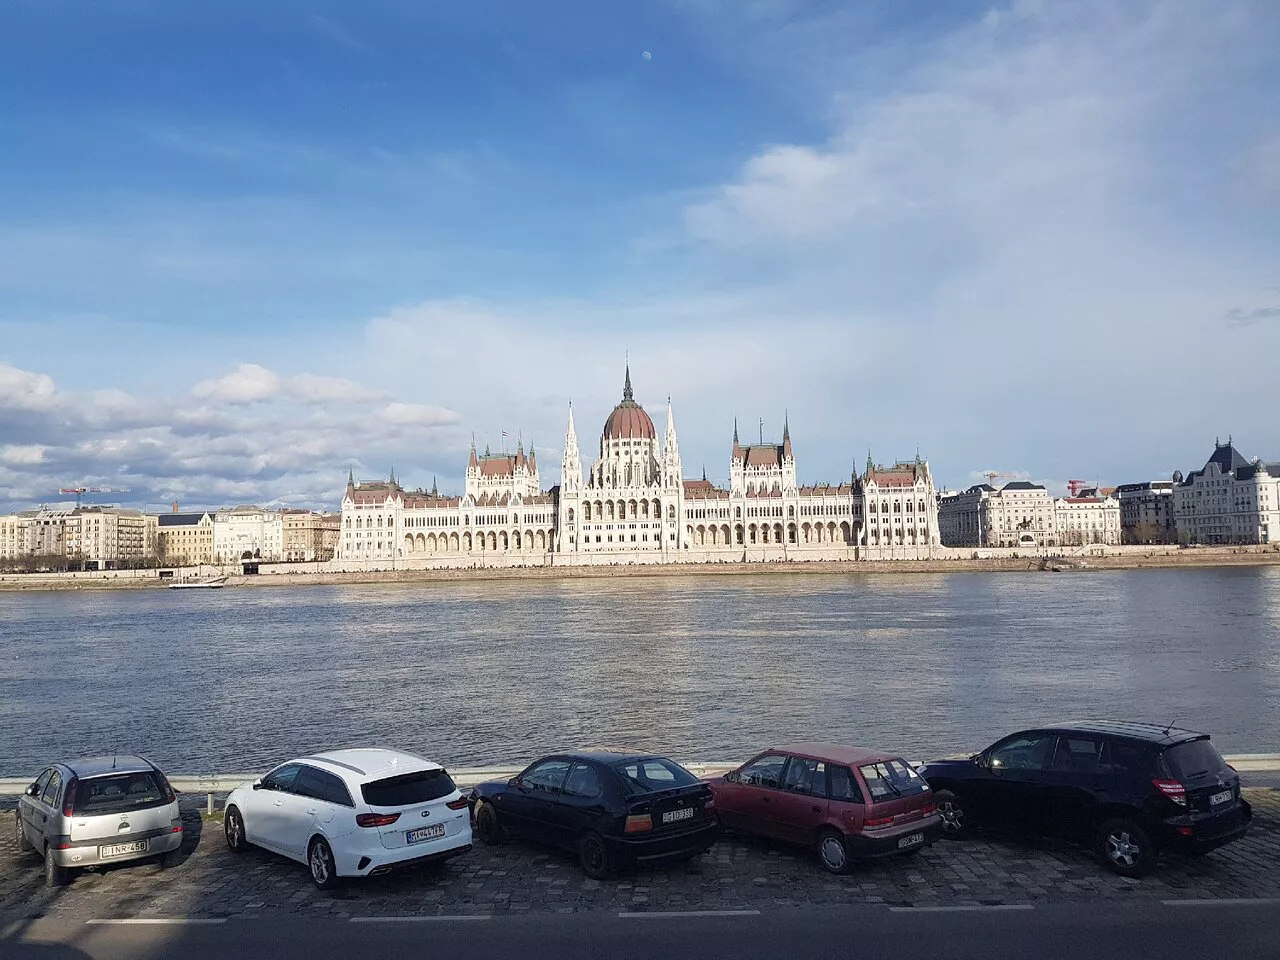 مبنى البرلمان الهنغاري